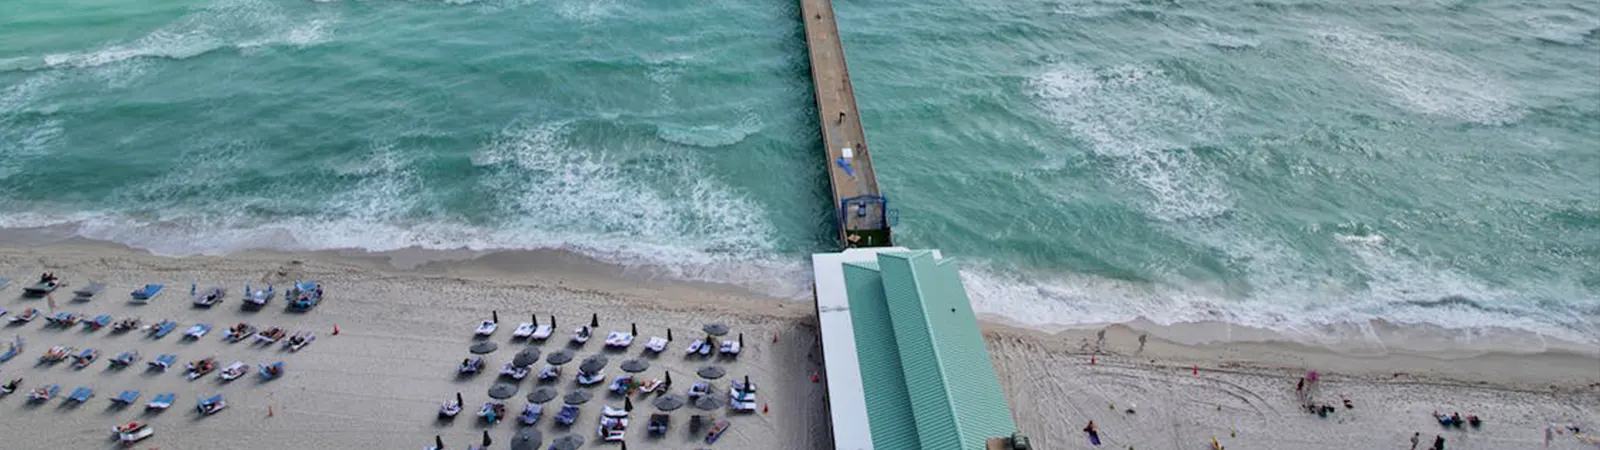 2. South Beach, Miami Beach